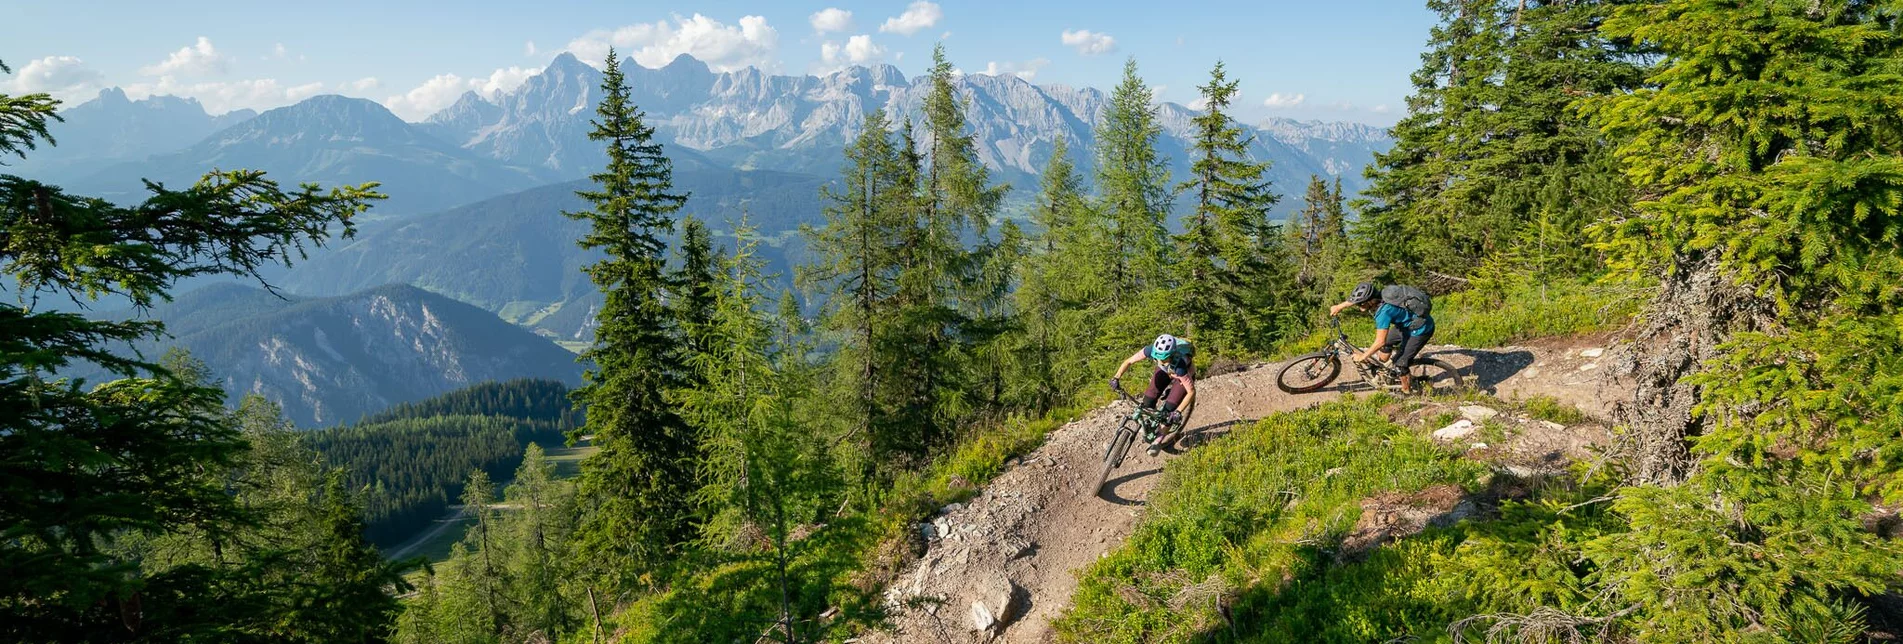 Mountain Biking Gassl Trail - Touren-Impression #1 | © Erlebnisregion Schladming-Dachstein